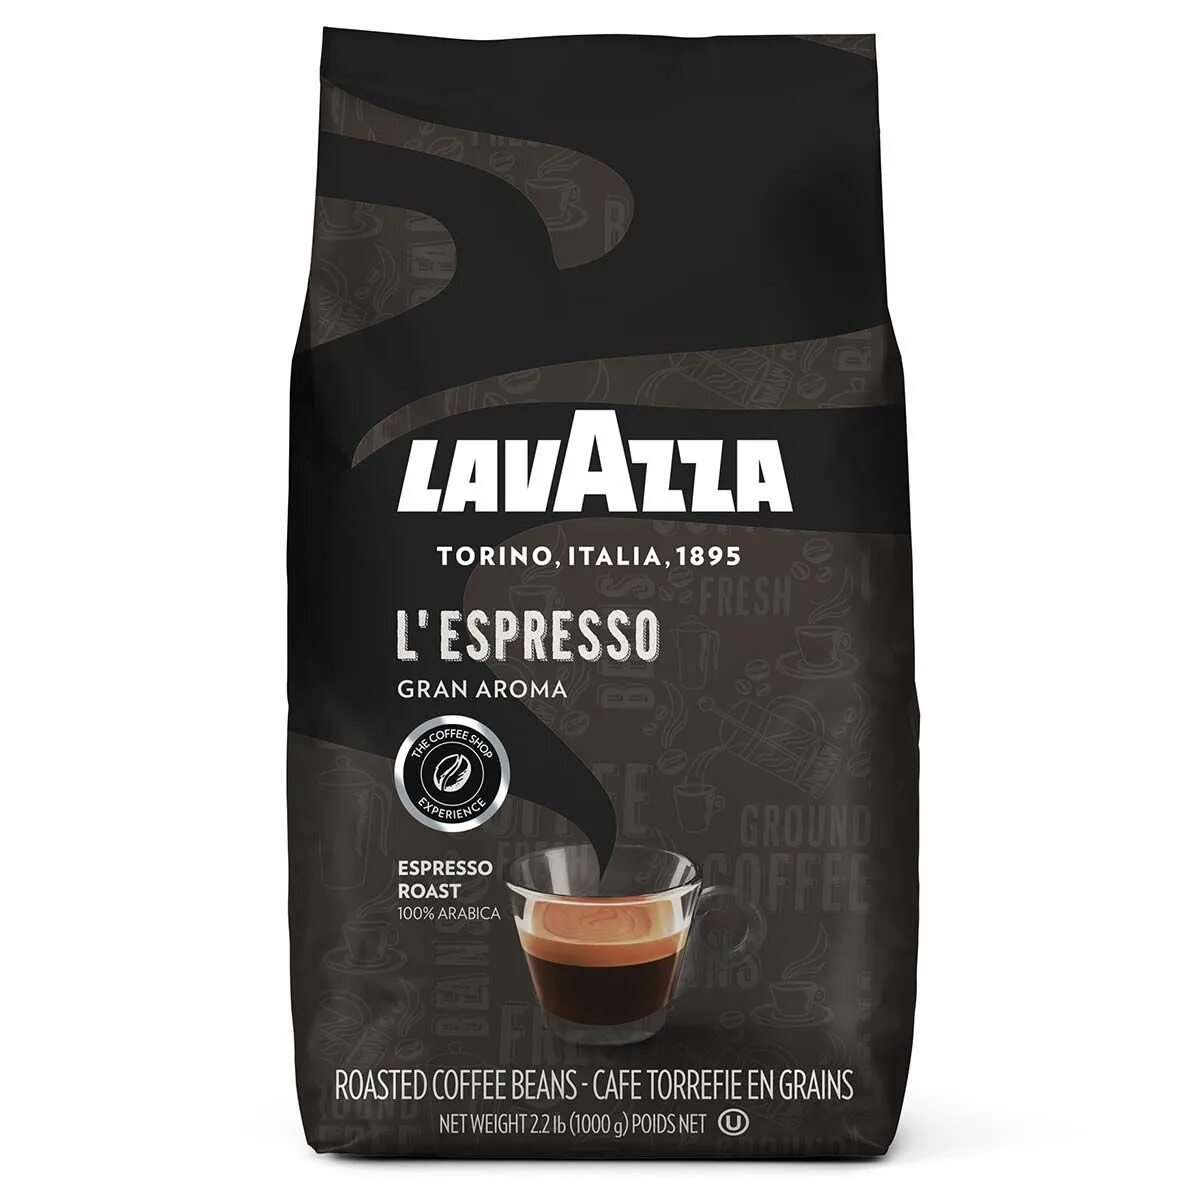 Купить кофе зерно лавацца в москве. Кофе в зернах Lavazza Espresso Barista. Кофе Lavazza Gran Aroma. Кофе в зернах "Lavazza Gran crema" 1 кг.. Кофе Lavazza Espresso в зернах 1 кг.